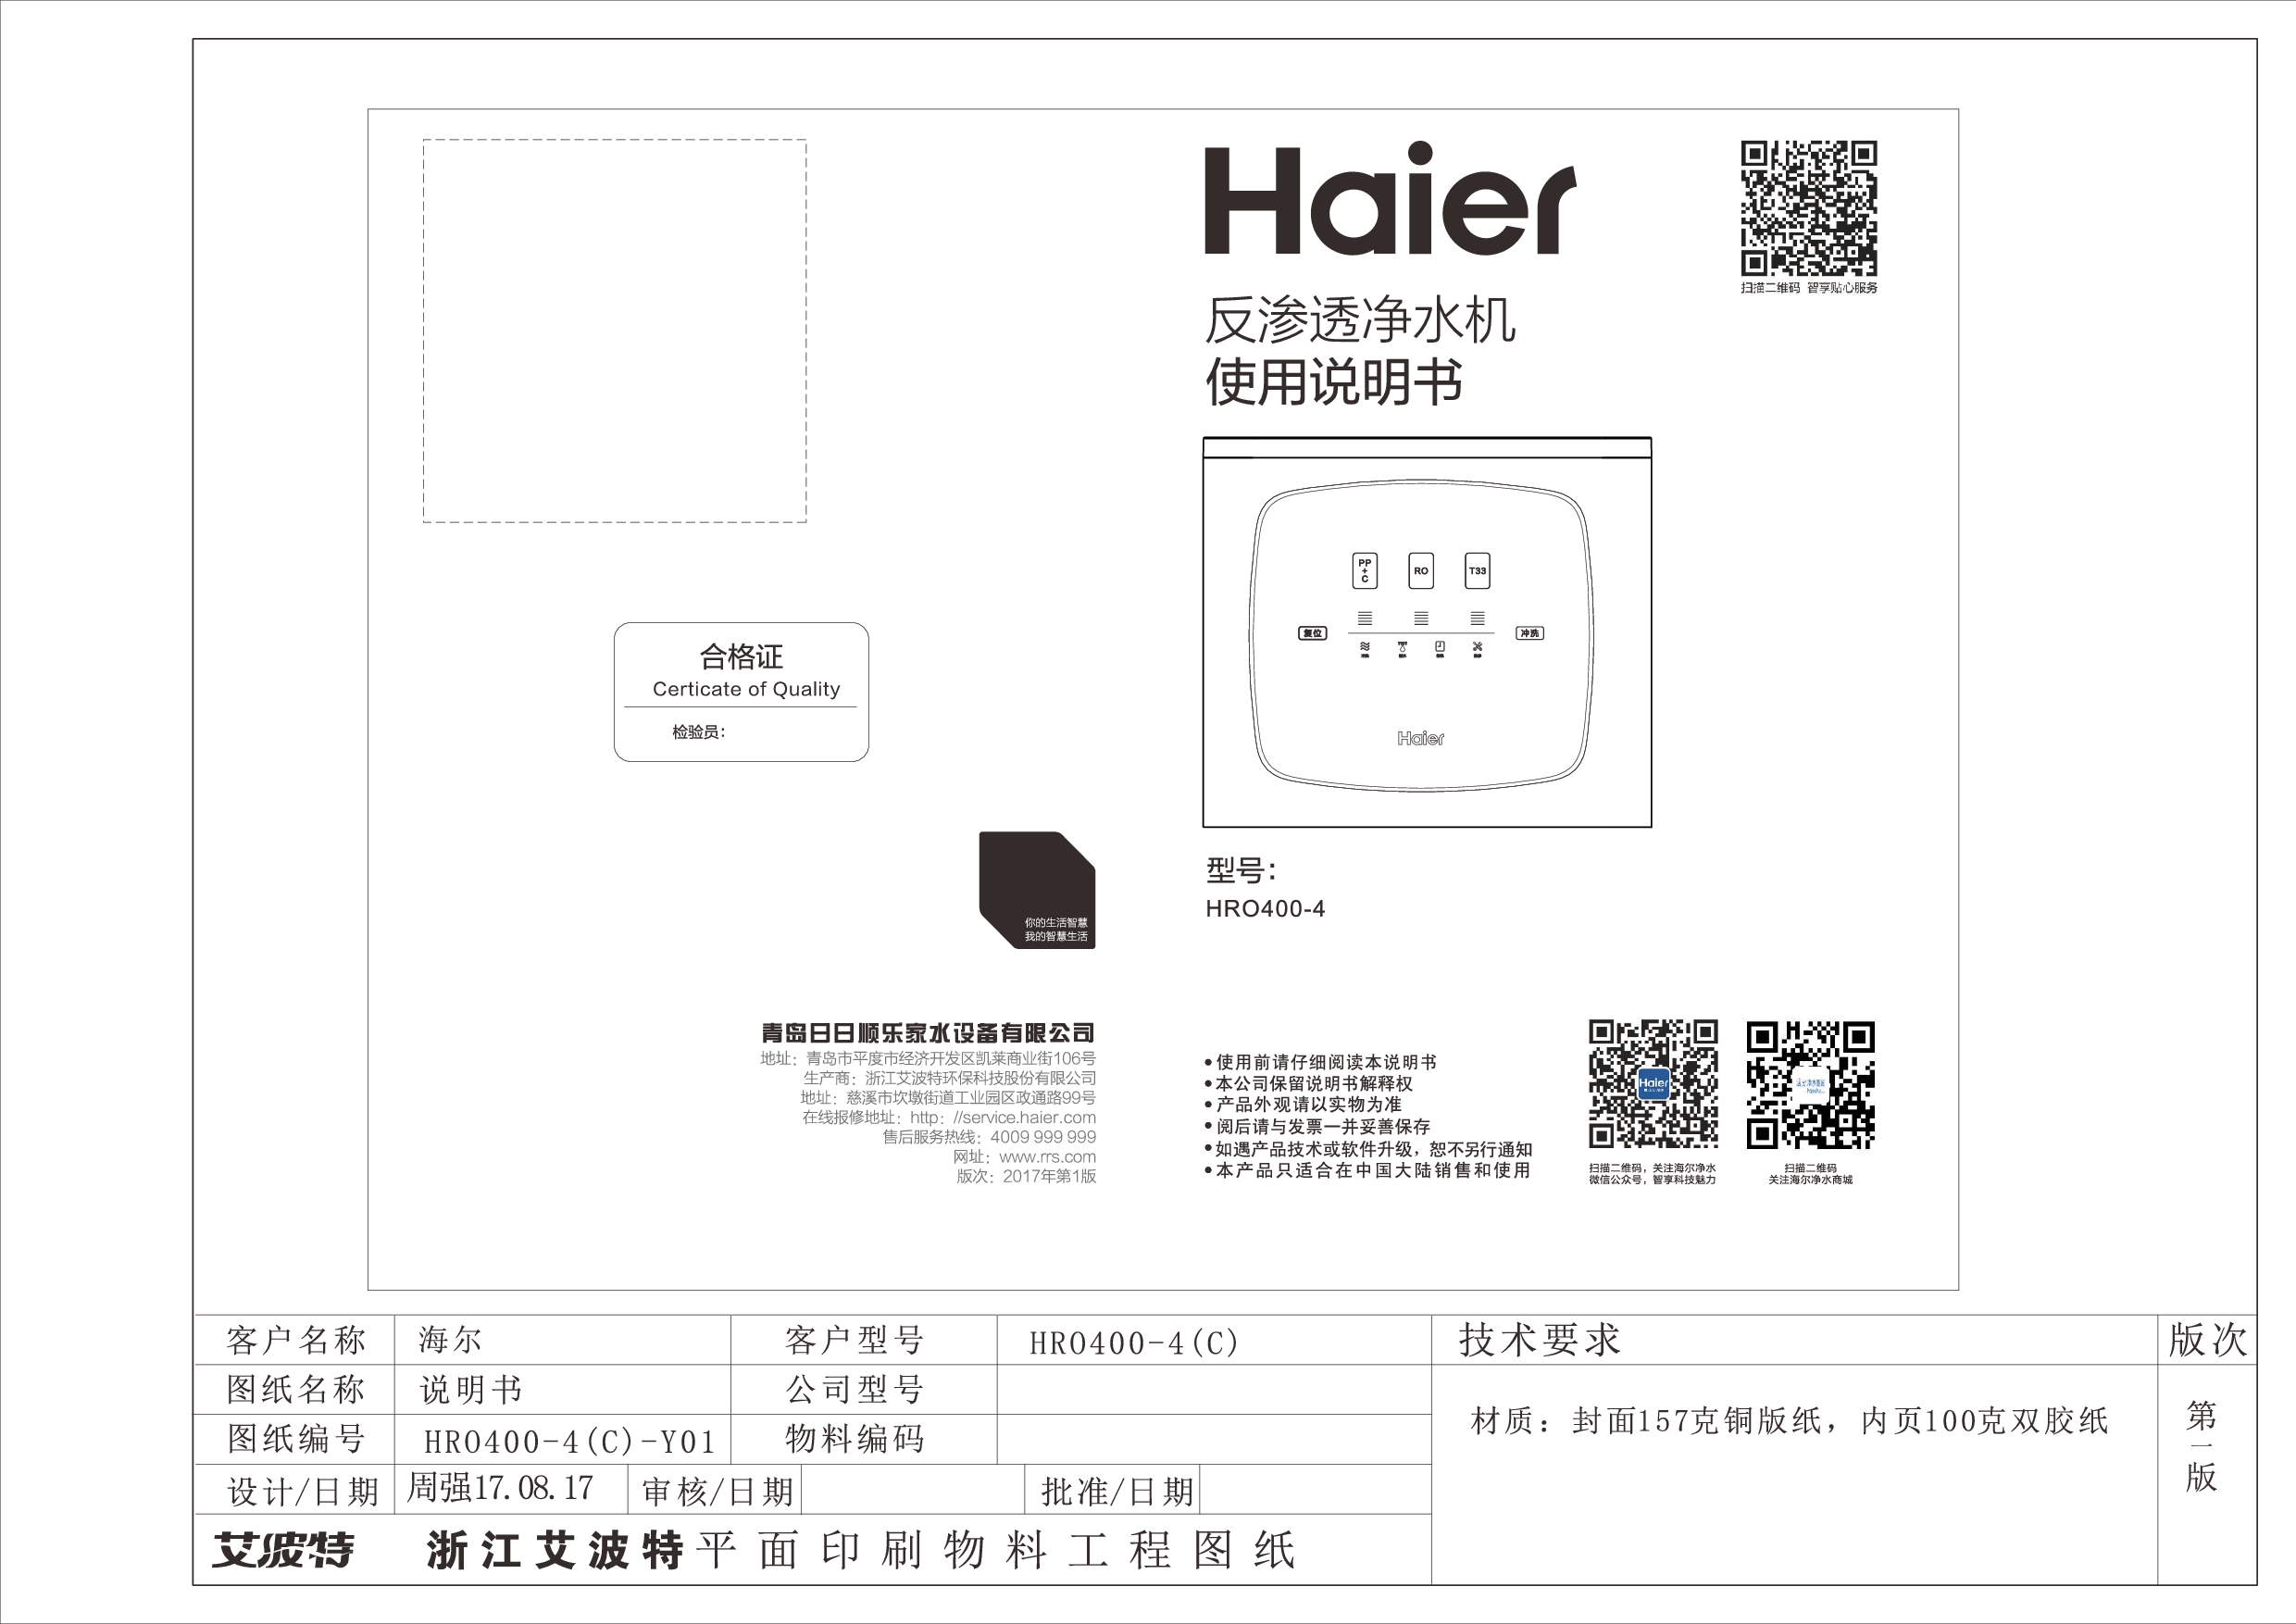 海尔 Haier HRO400-4C 使用说明书 封面